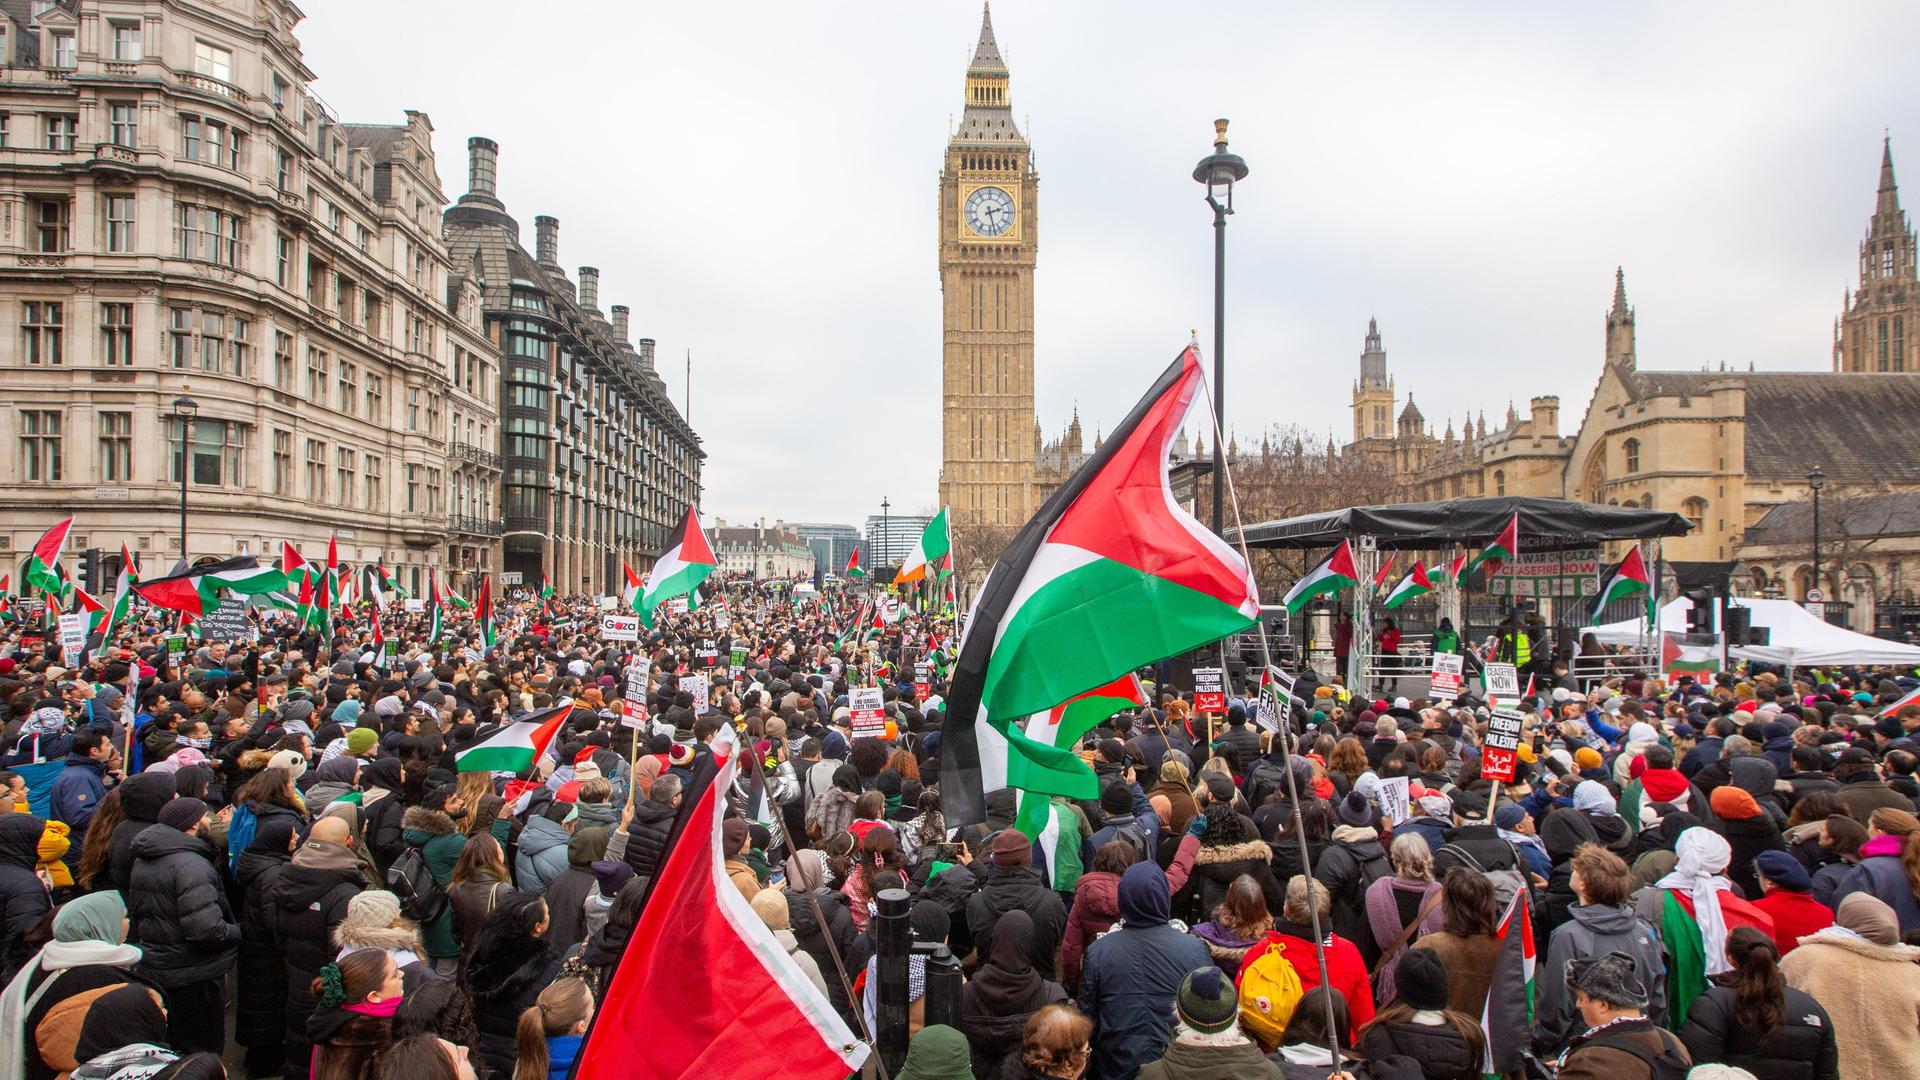 Demonstranten halten Fahnen während einer Demonstration zur Unterstützung der palästinensischen Bevölkerung. Im Hintergrund zeigt das Bild den Big Ben.